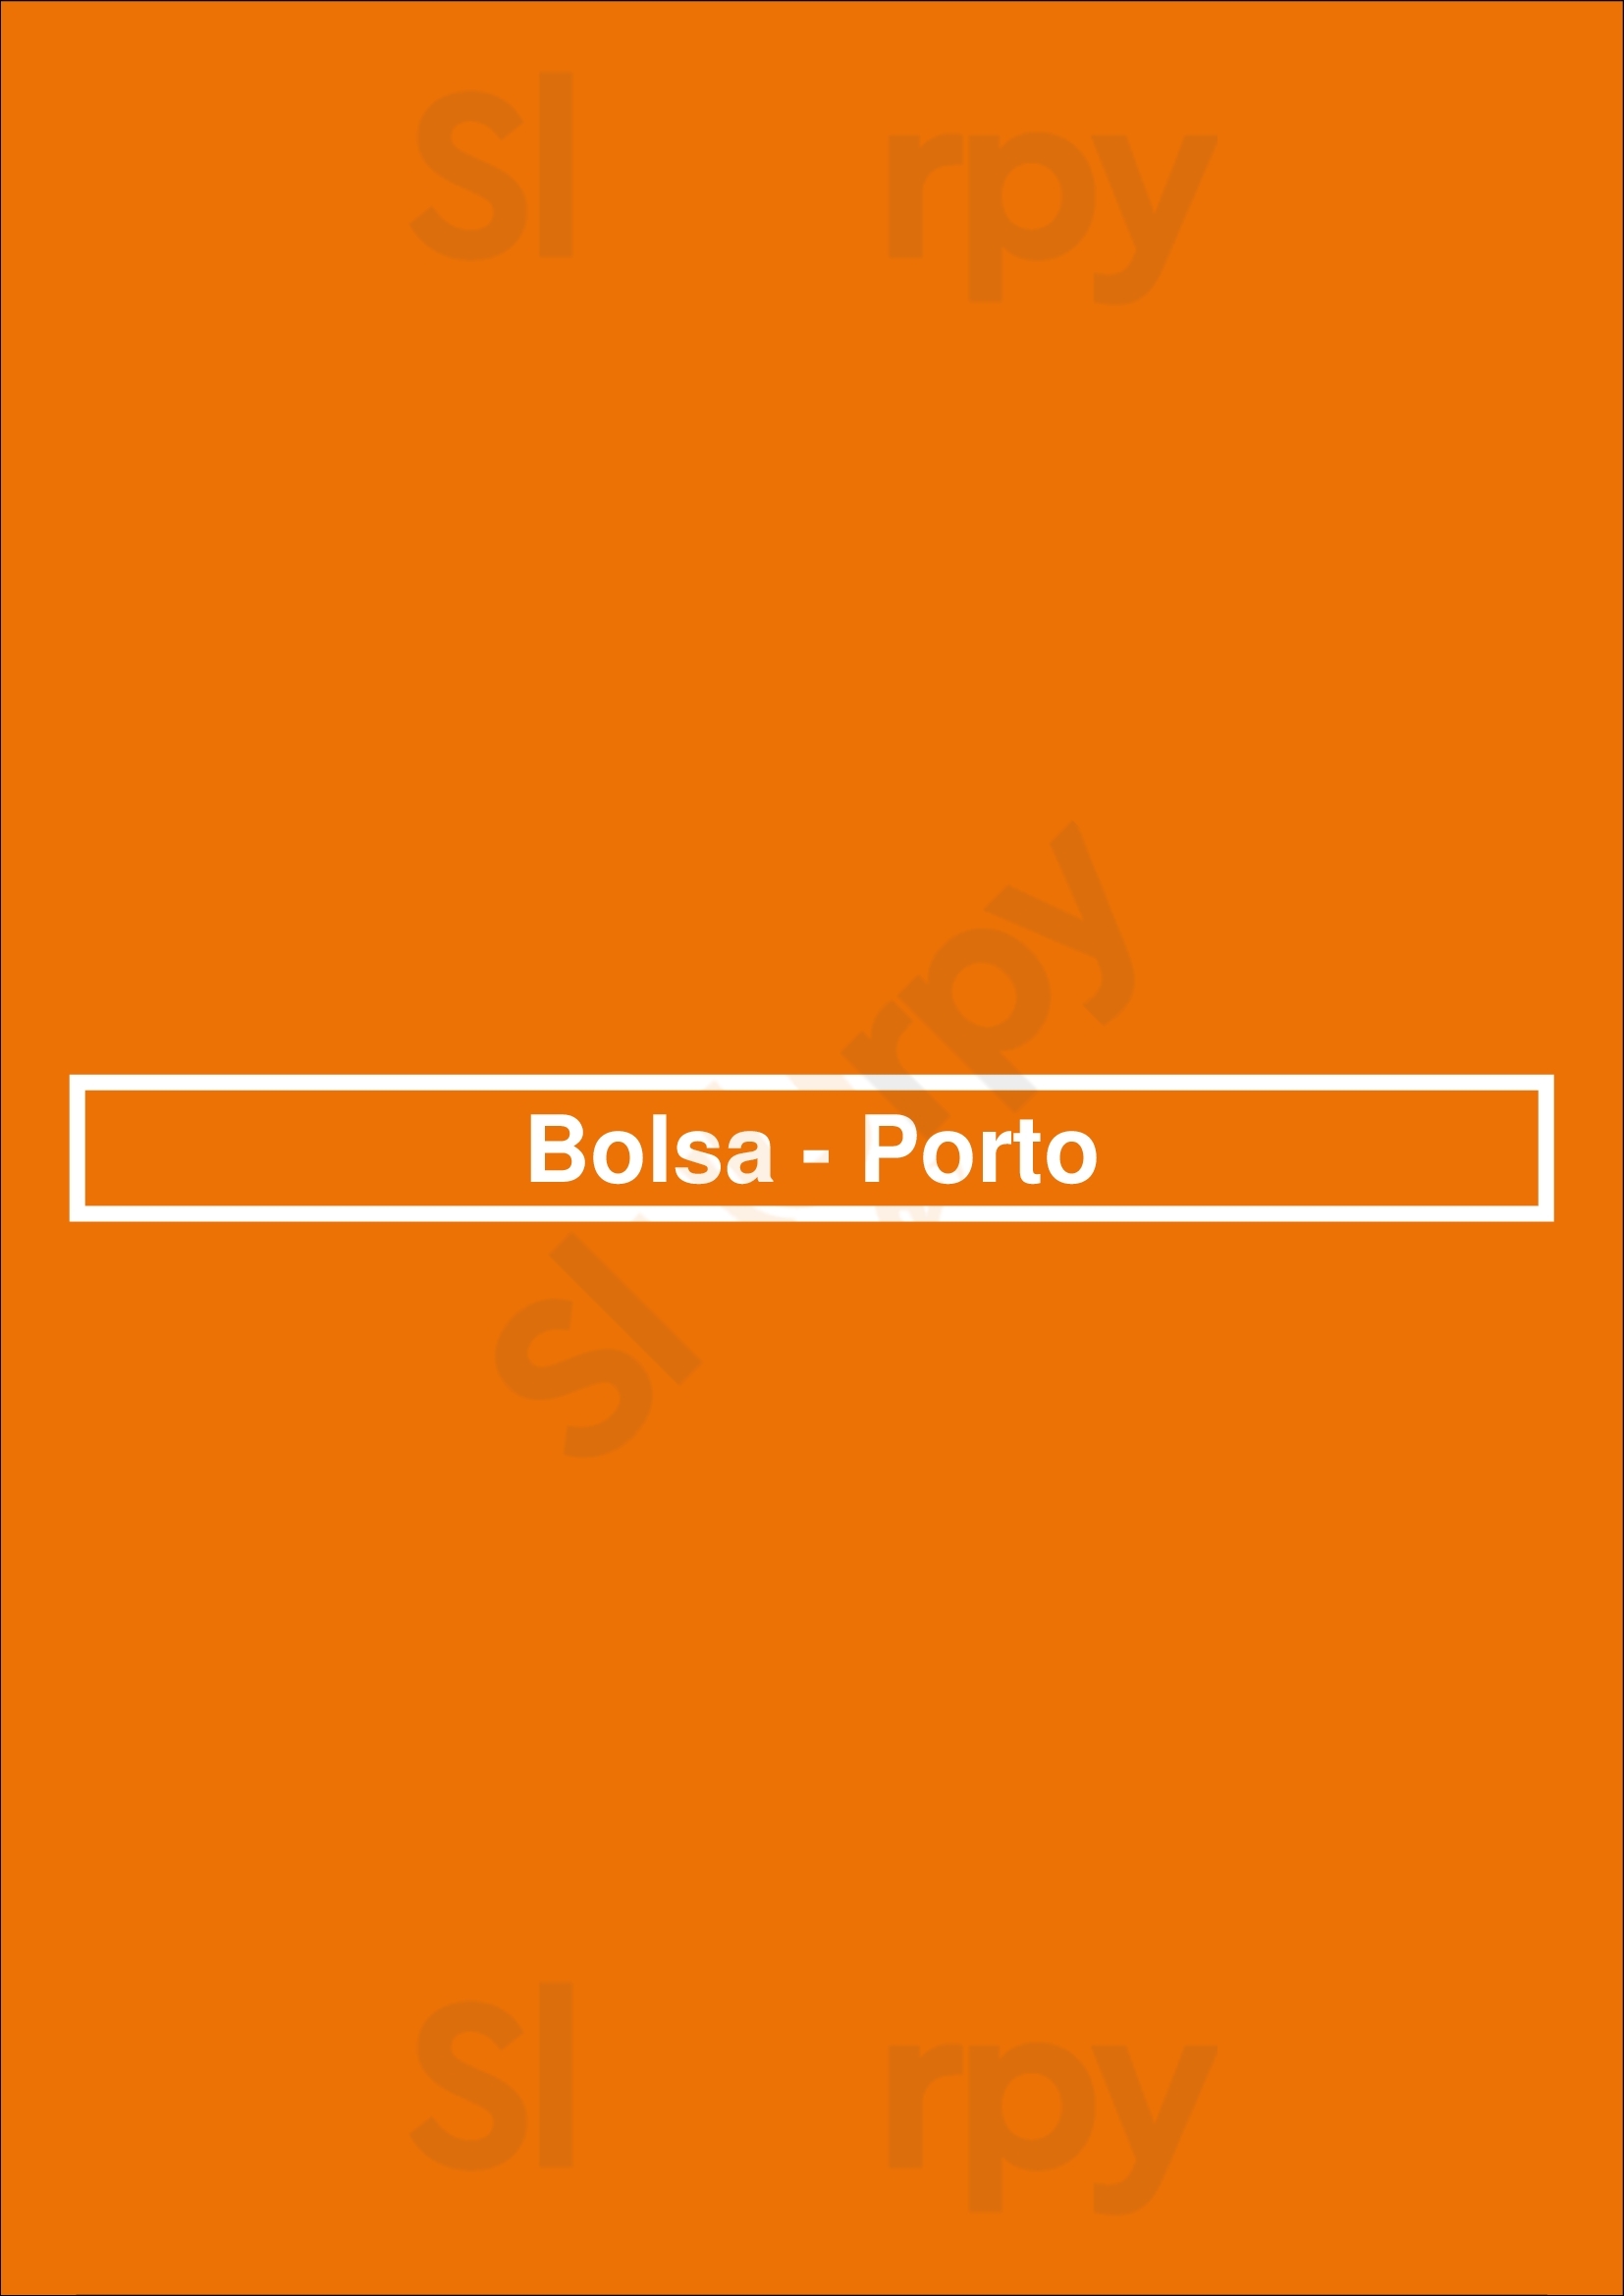 Bolsa - Porto Porto Menu - 1